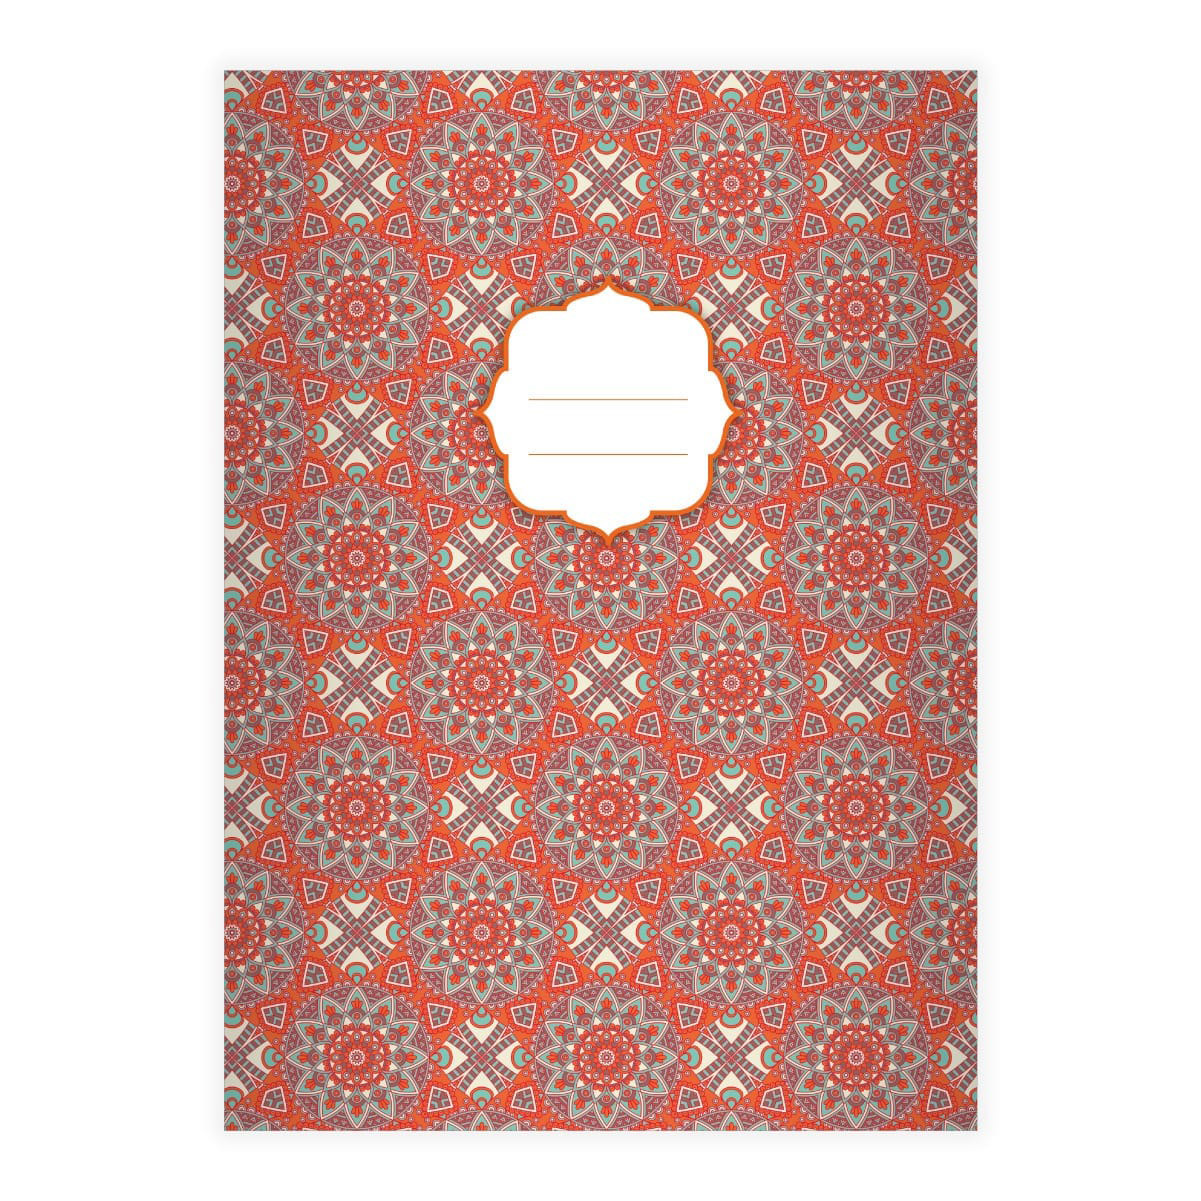 Kartenkaufrausch: Boho Stil Notizheft/ Schulheft aus unserer Designer Papeterie in orange